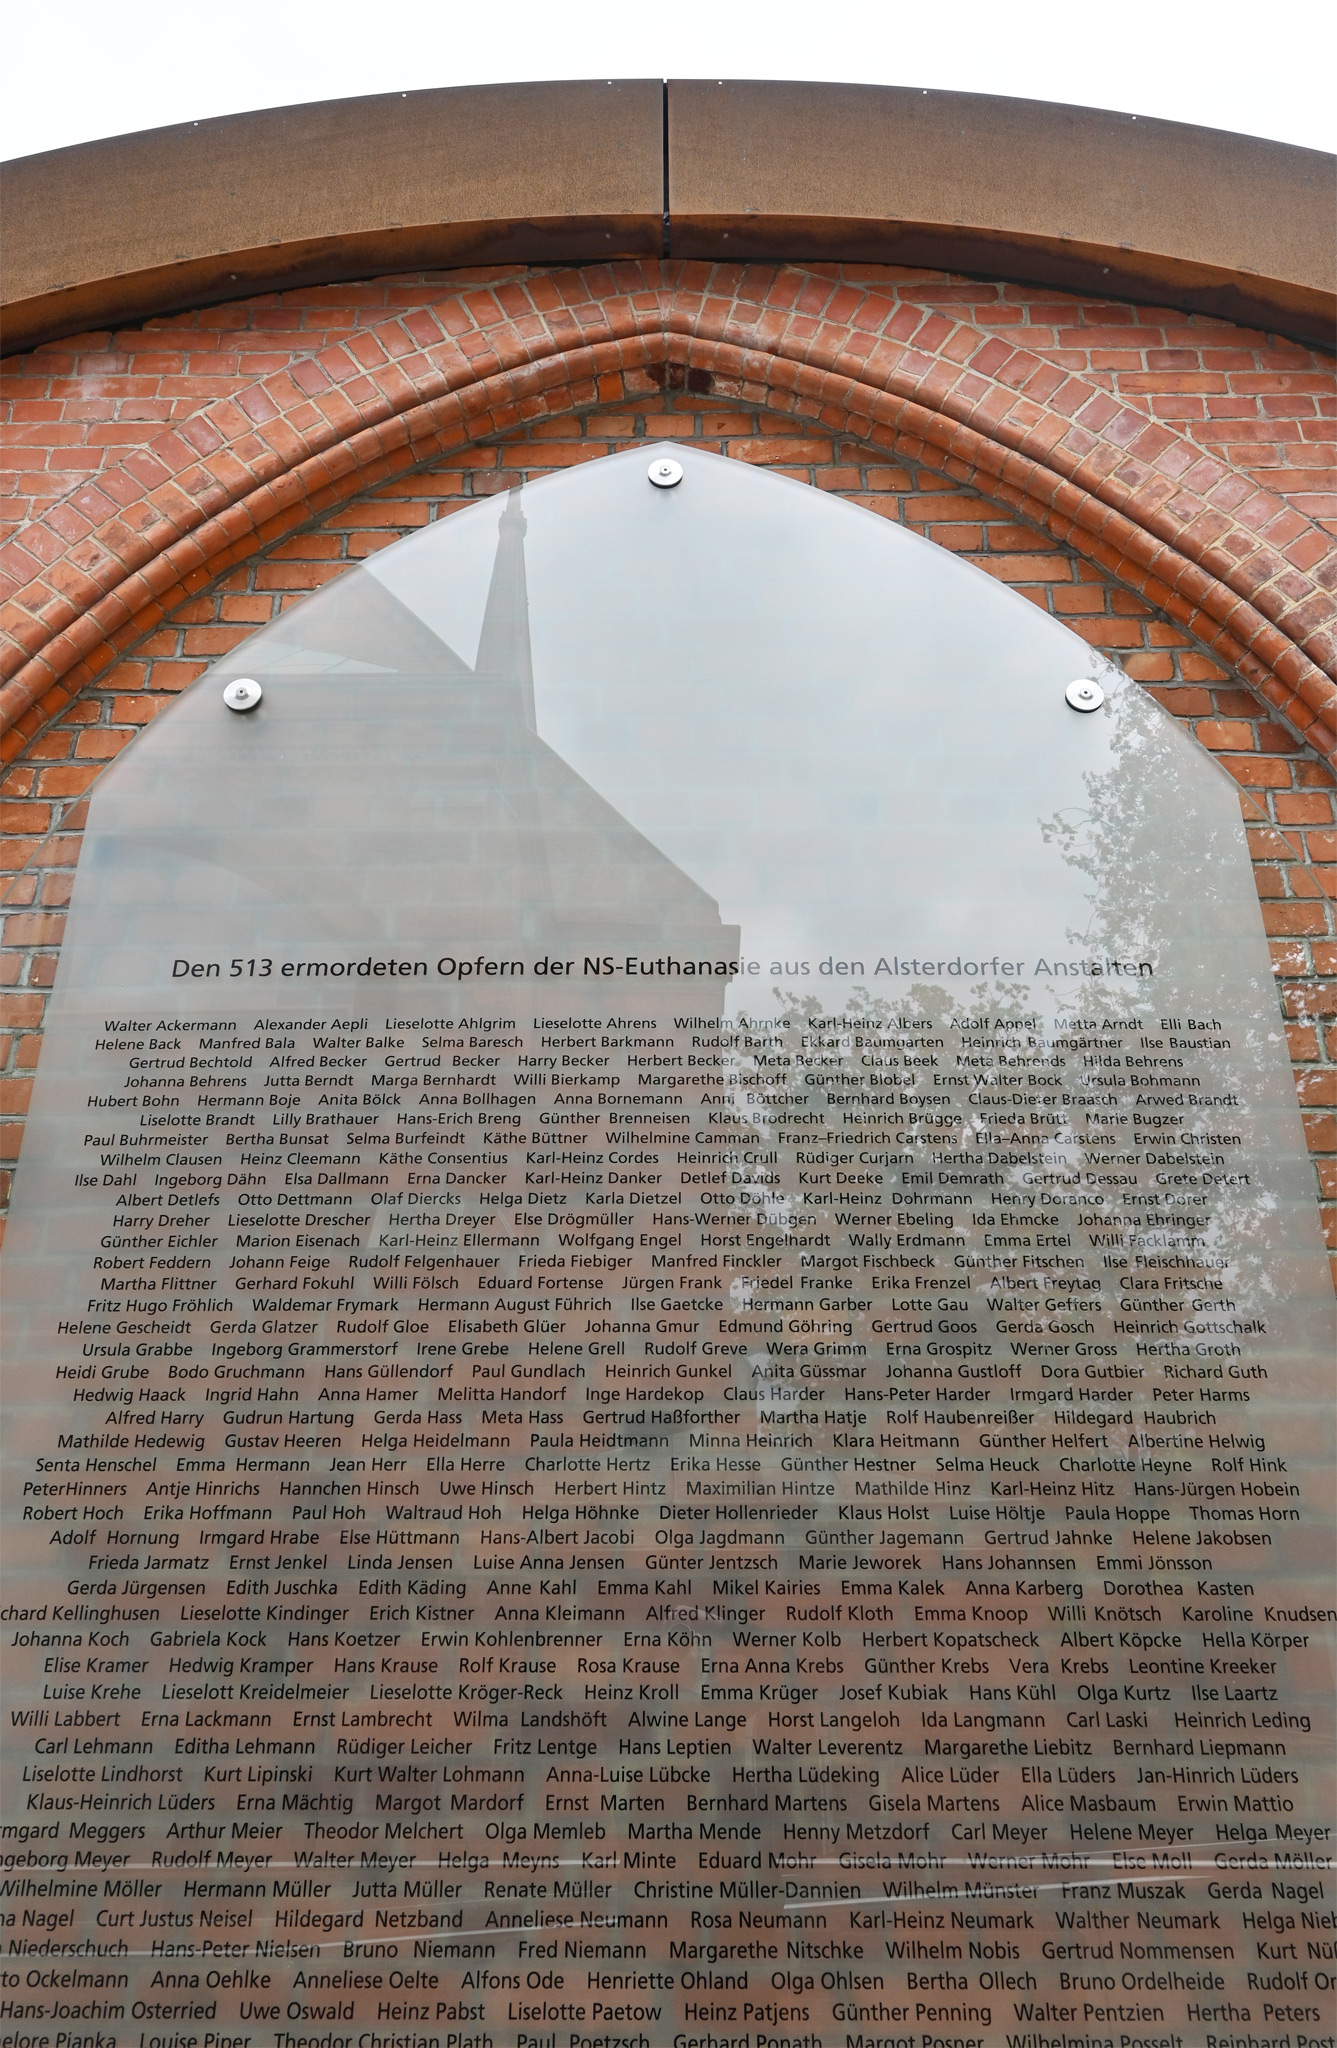 Die Glaswand mit den Namen der Opfer